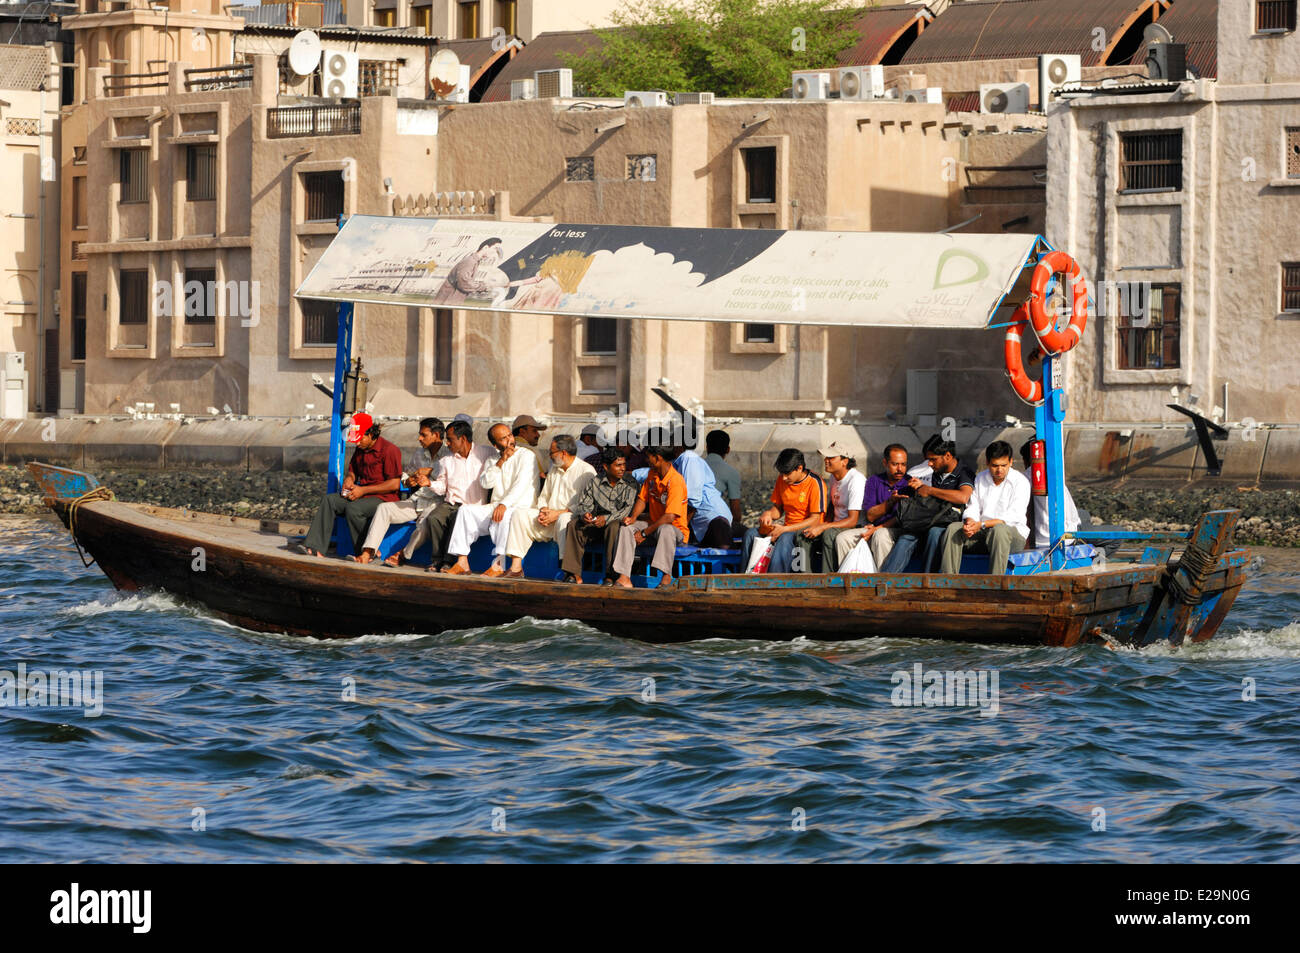 United Arab Emirates, Dubai emirate, Dubai, an abra, traditional passenger boat on the Dubai Creek arm of the sea Stock Photo